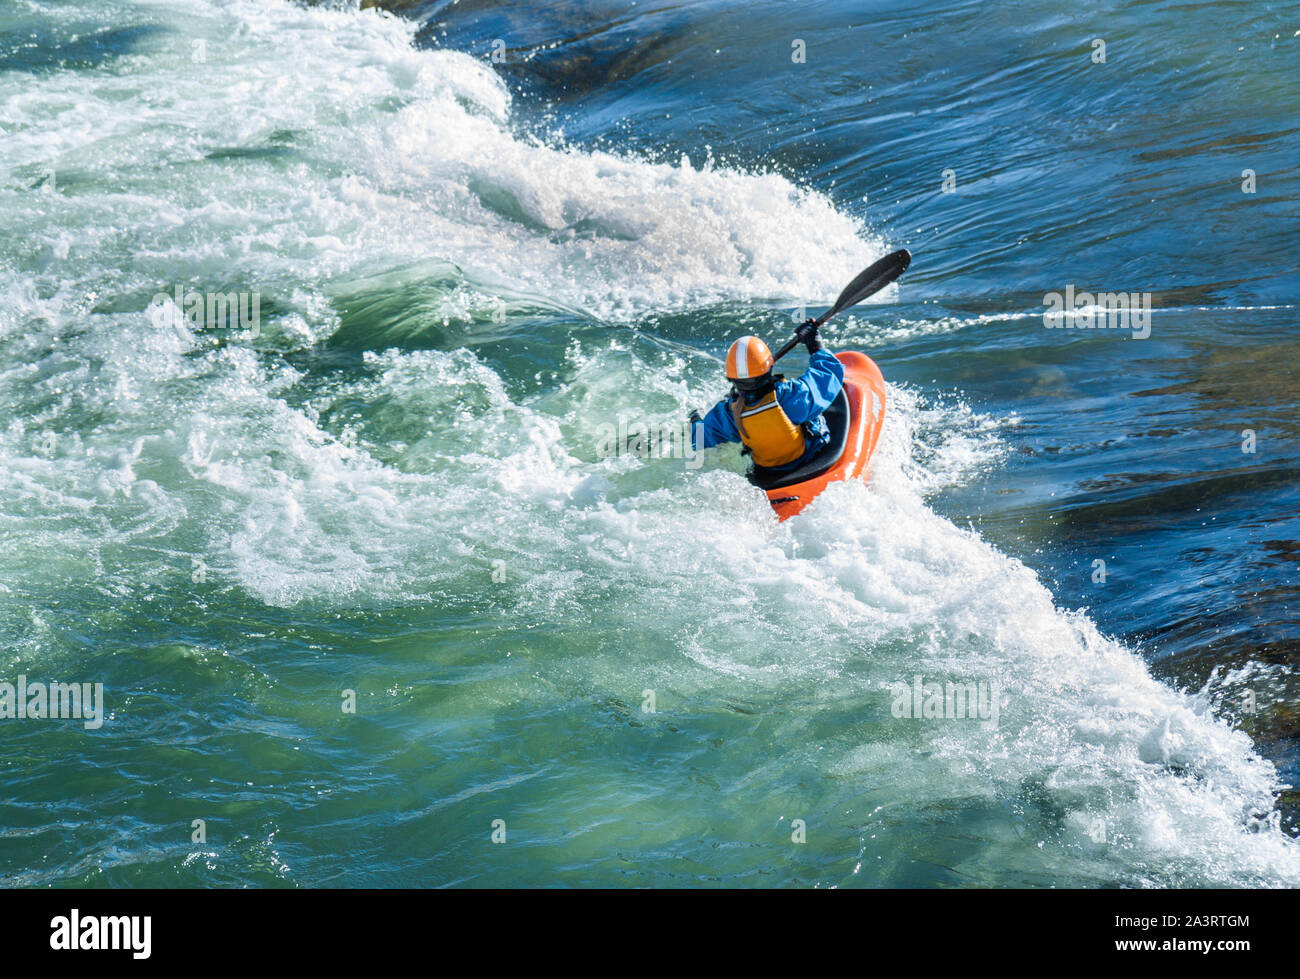 La pratique de kayak rivière en rouleaux Banque D'Images